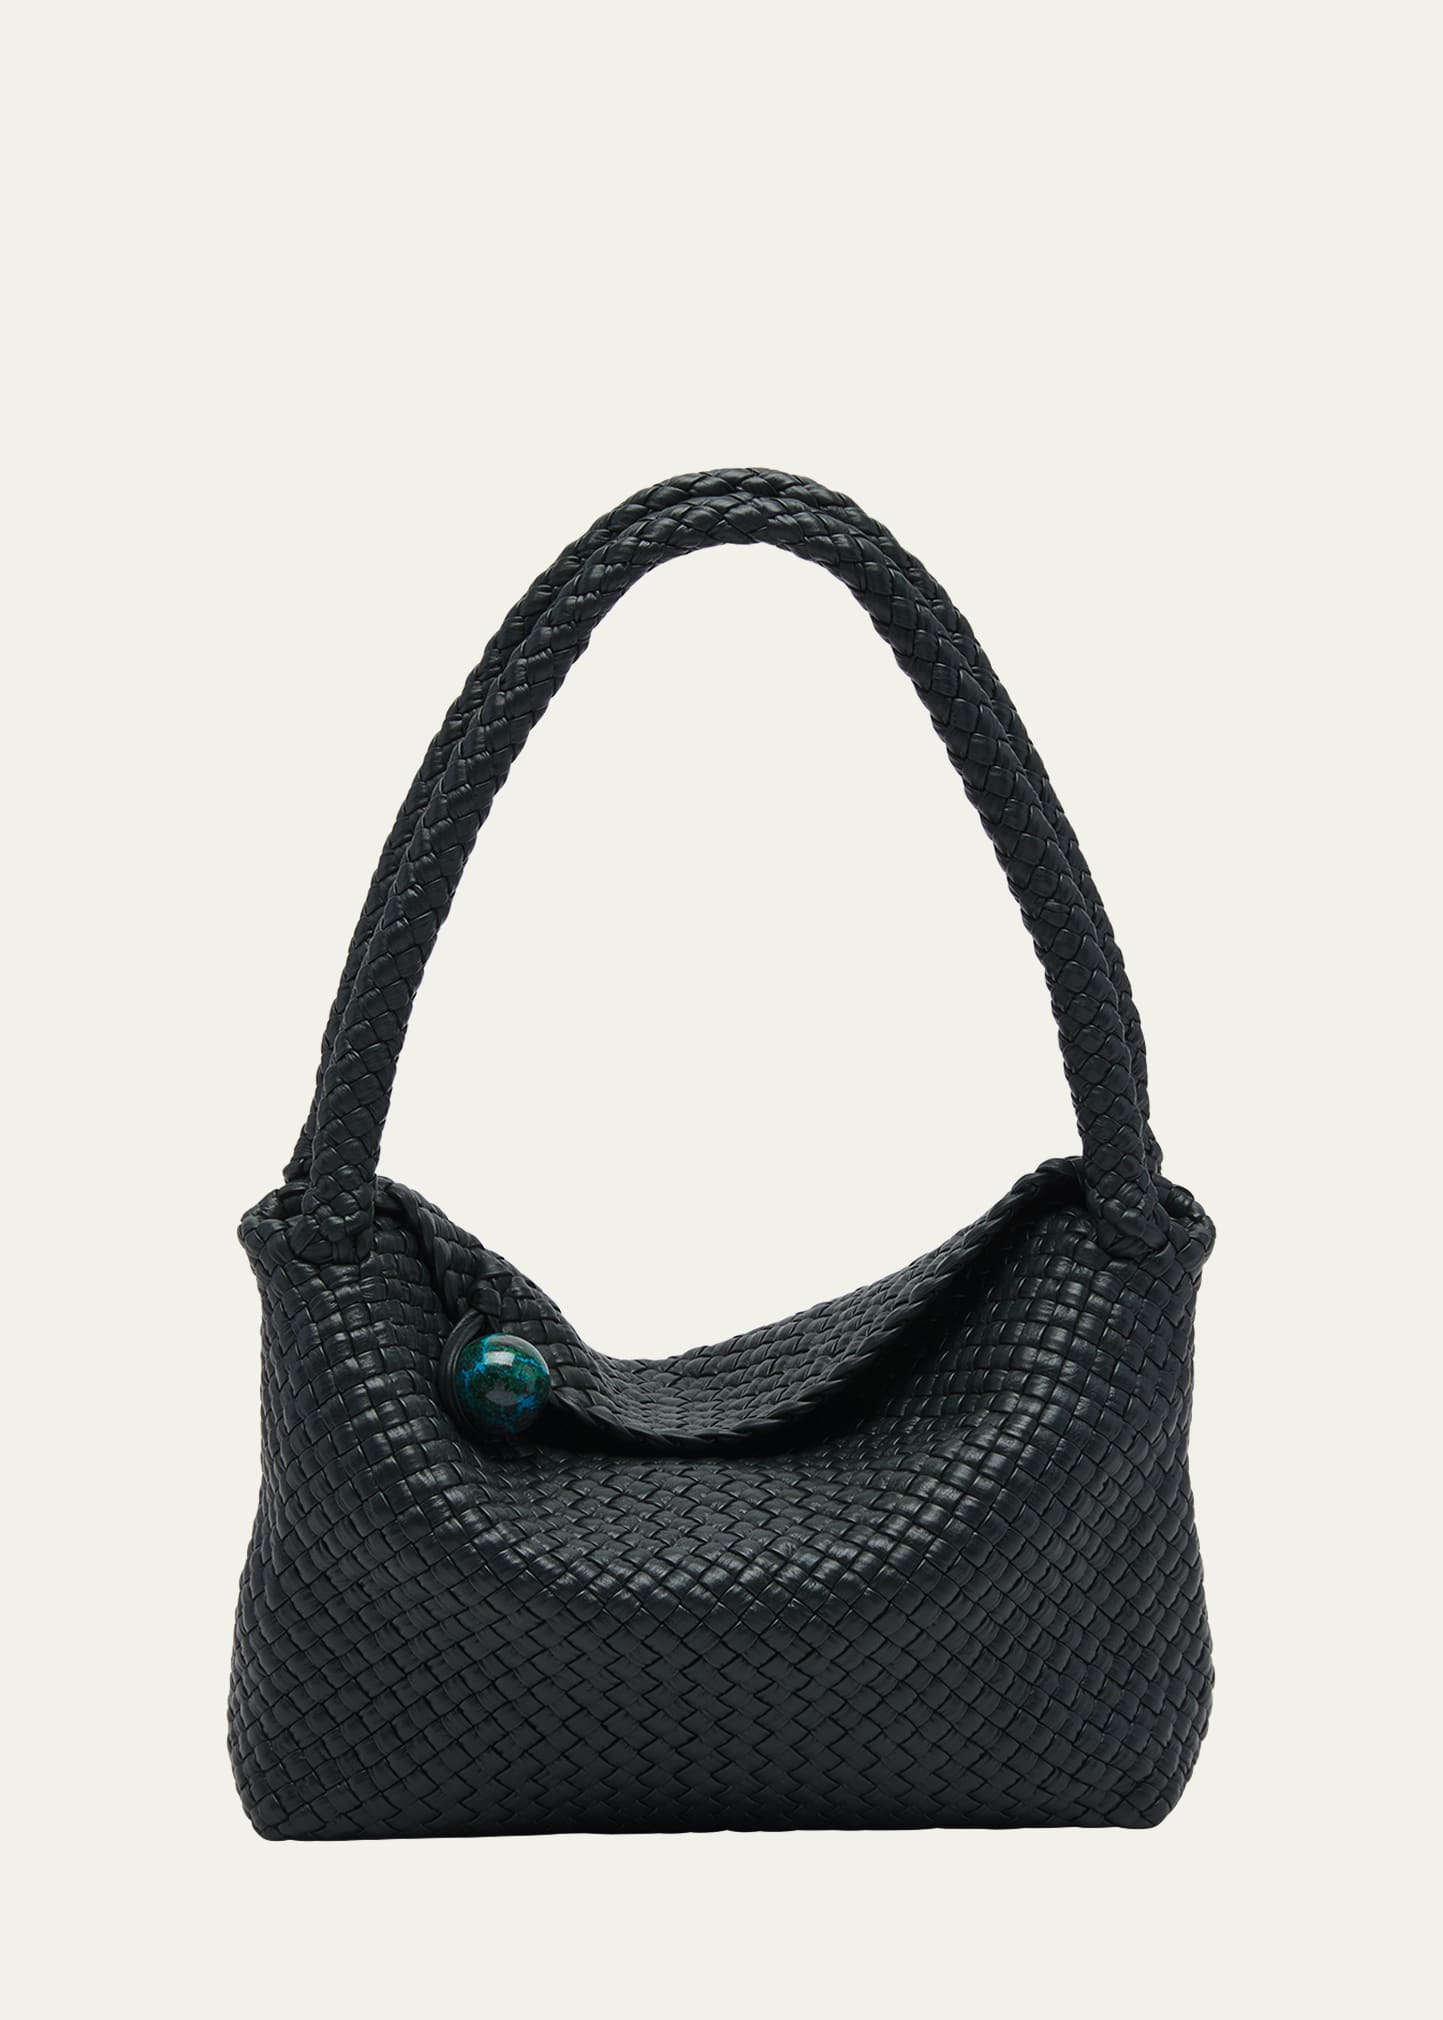 Tosca Intreccio Leather Shoulder Bag